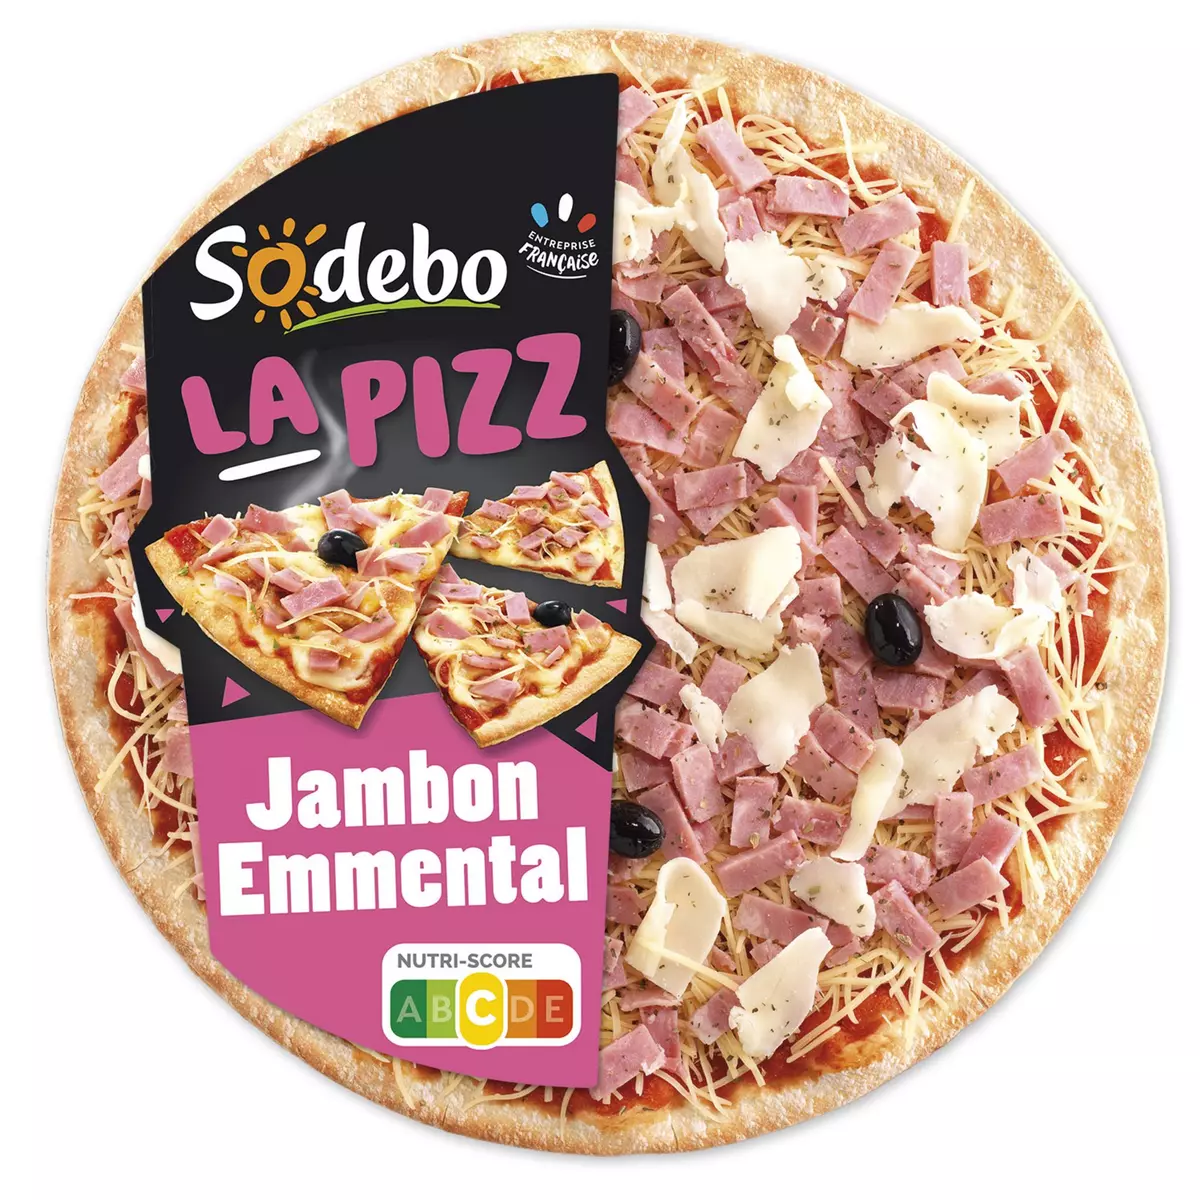 SODEBO Pizza la pizz jambon emmental à partager 470g